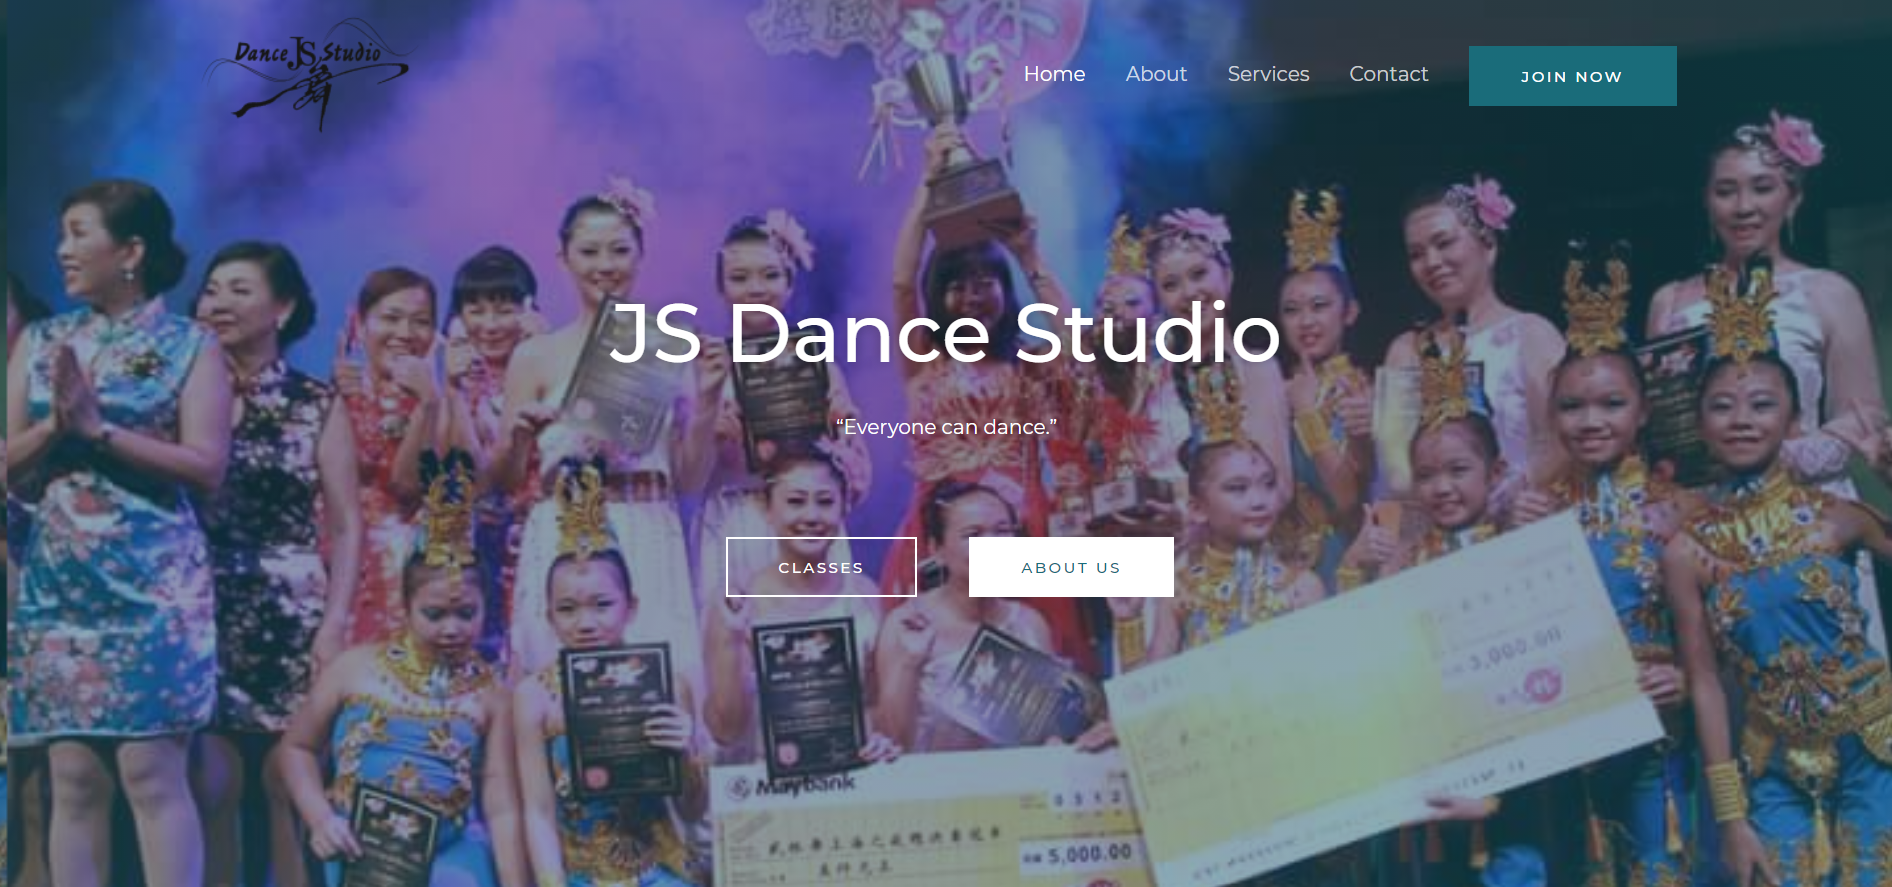 JS Dance Studio Website Design